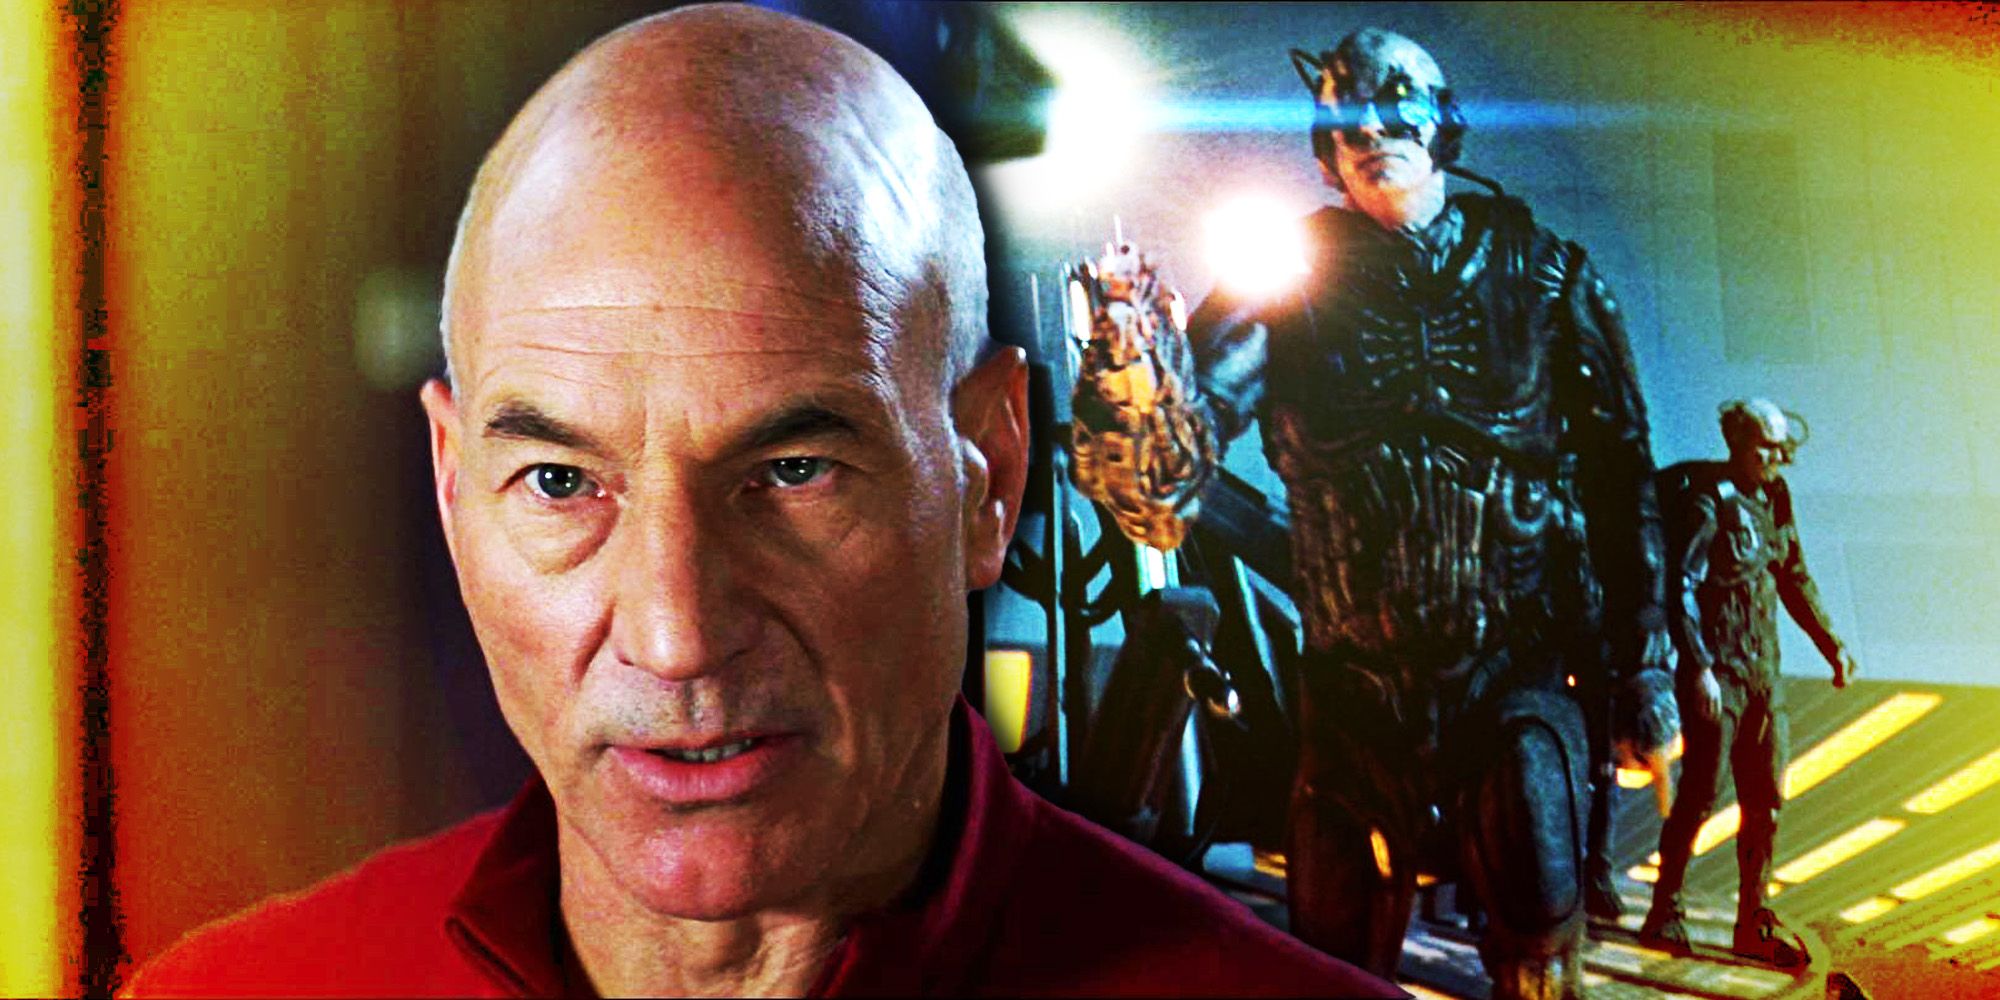 Olvídese de la muerte familiar de Picard y haga que Jean-Luc sea más “heroico” en Star Trek: primer contacto, dijo Patrick Stewart